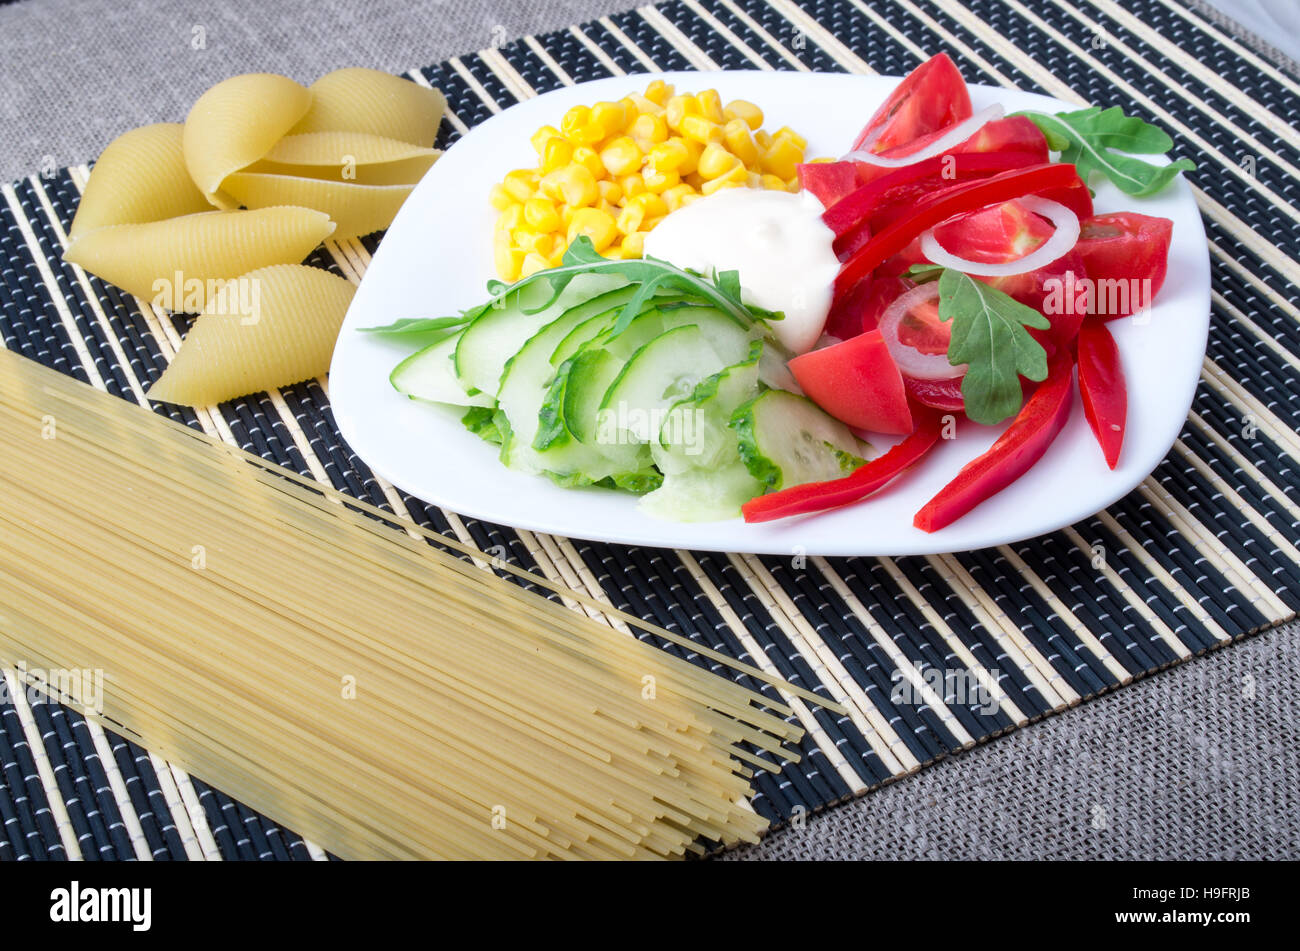 Stücke von frischem rohem Gemüse auf einem weißen Teller - Pfeffer, Tomaten, Mais, Rucola, Gurken, Mozzarella-Käse auf einem gestreiften Hintergrund mit Pasta und sp Stockfoto